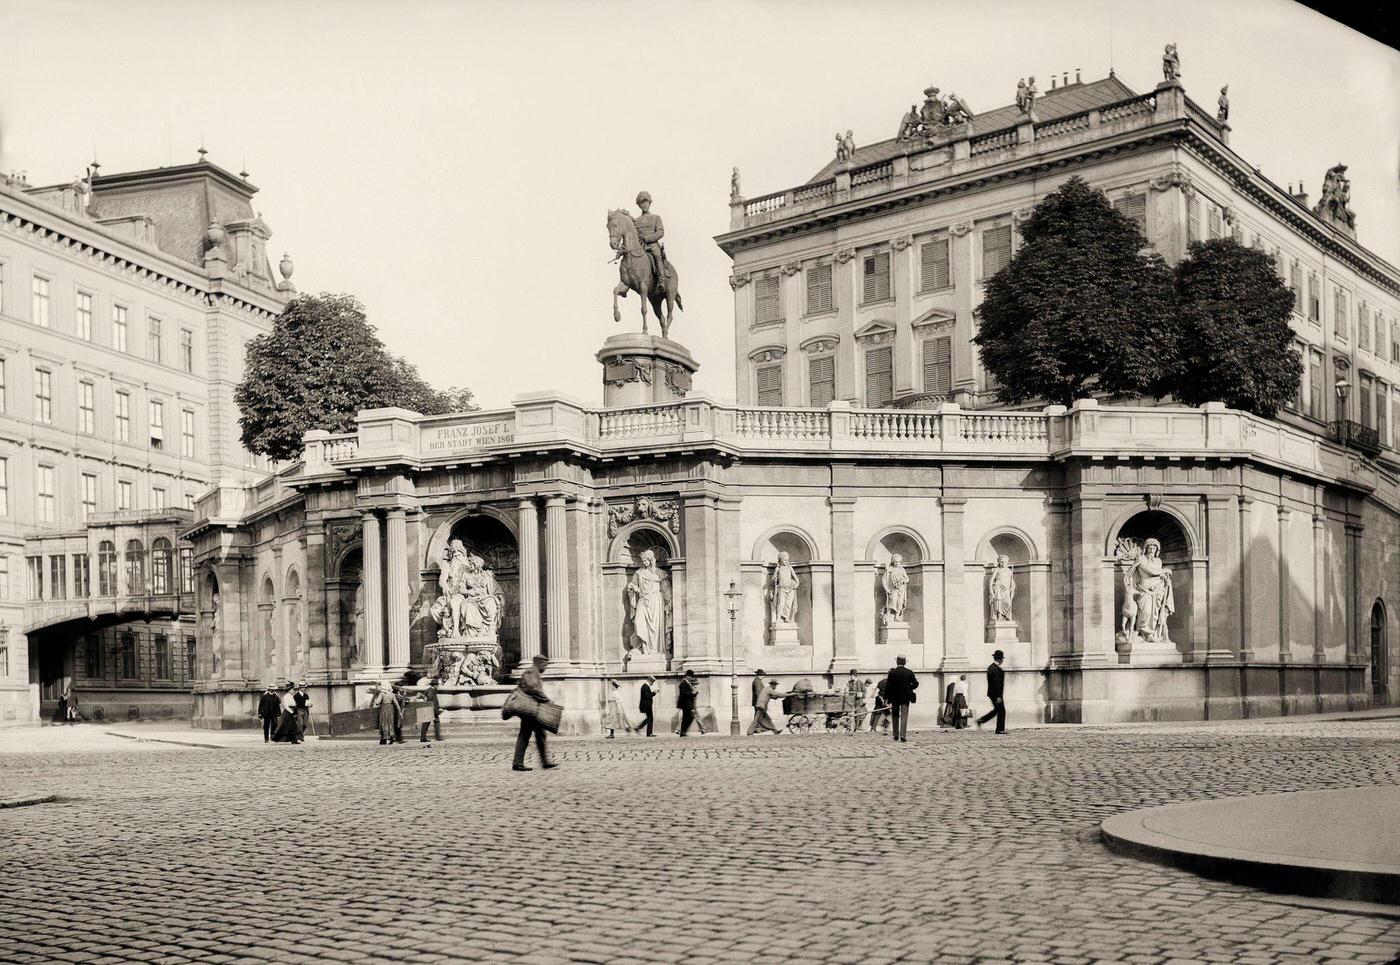 The Albertina in Archduke Albrecht palace, Albrechtsplatz, About 1907